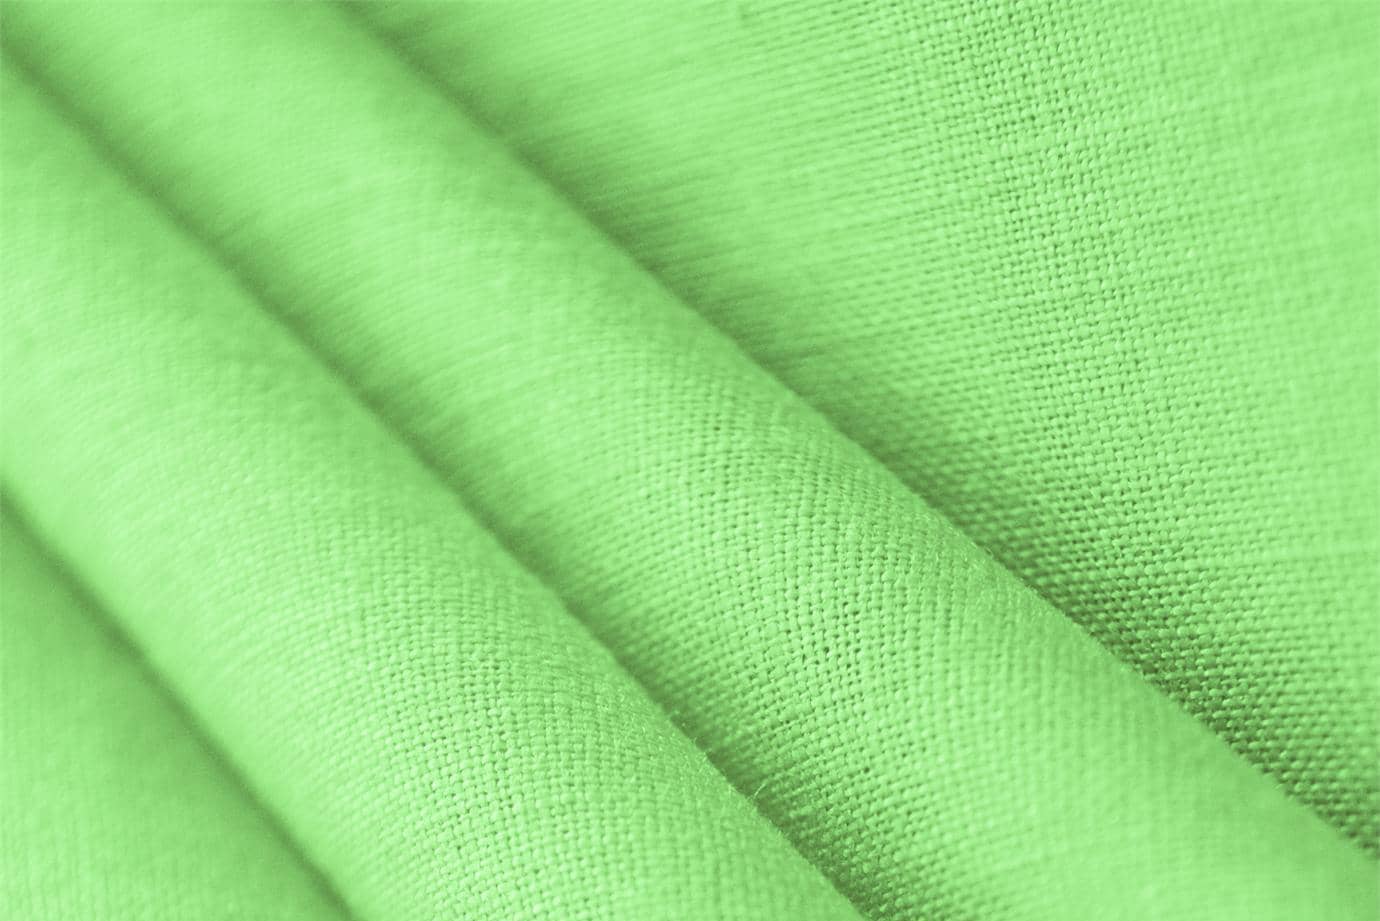 Sap Green Linen Linen Canvas fabric for dressmaking